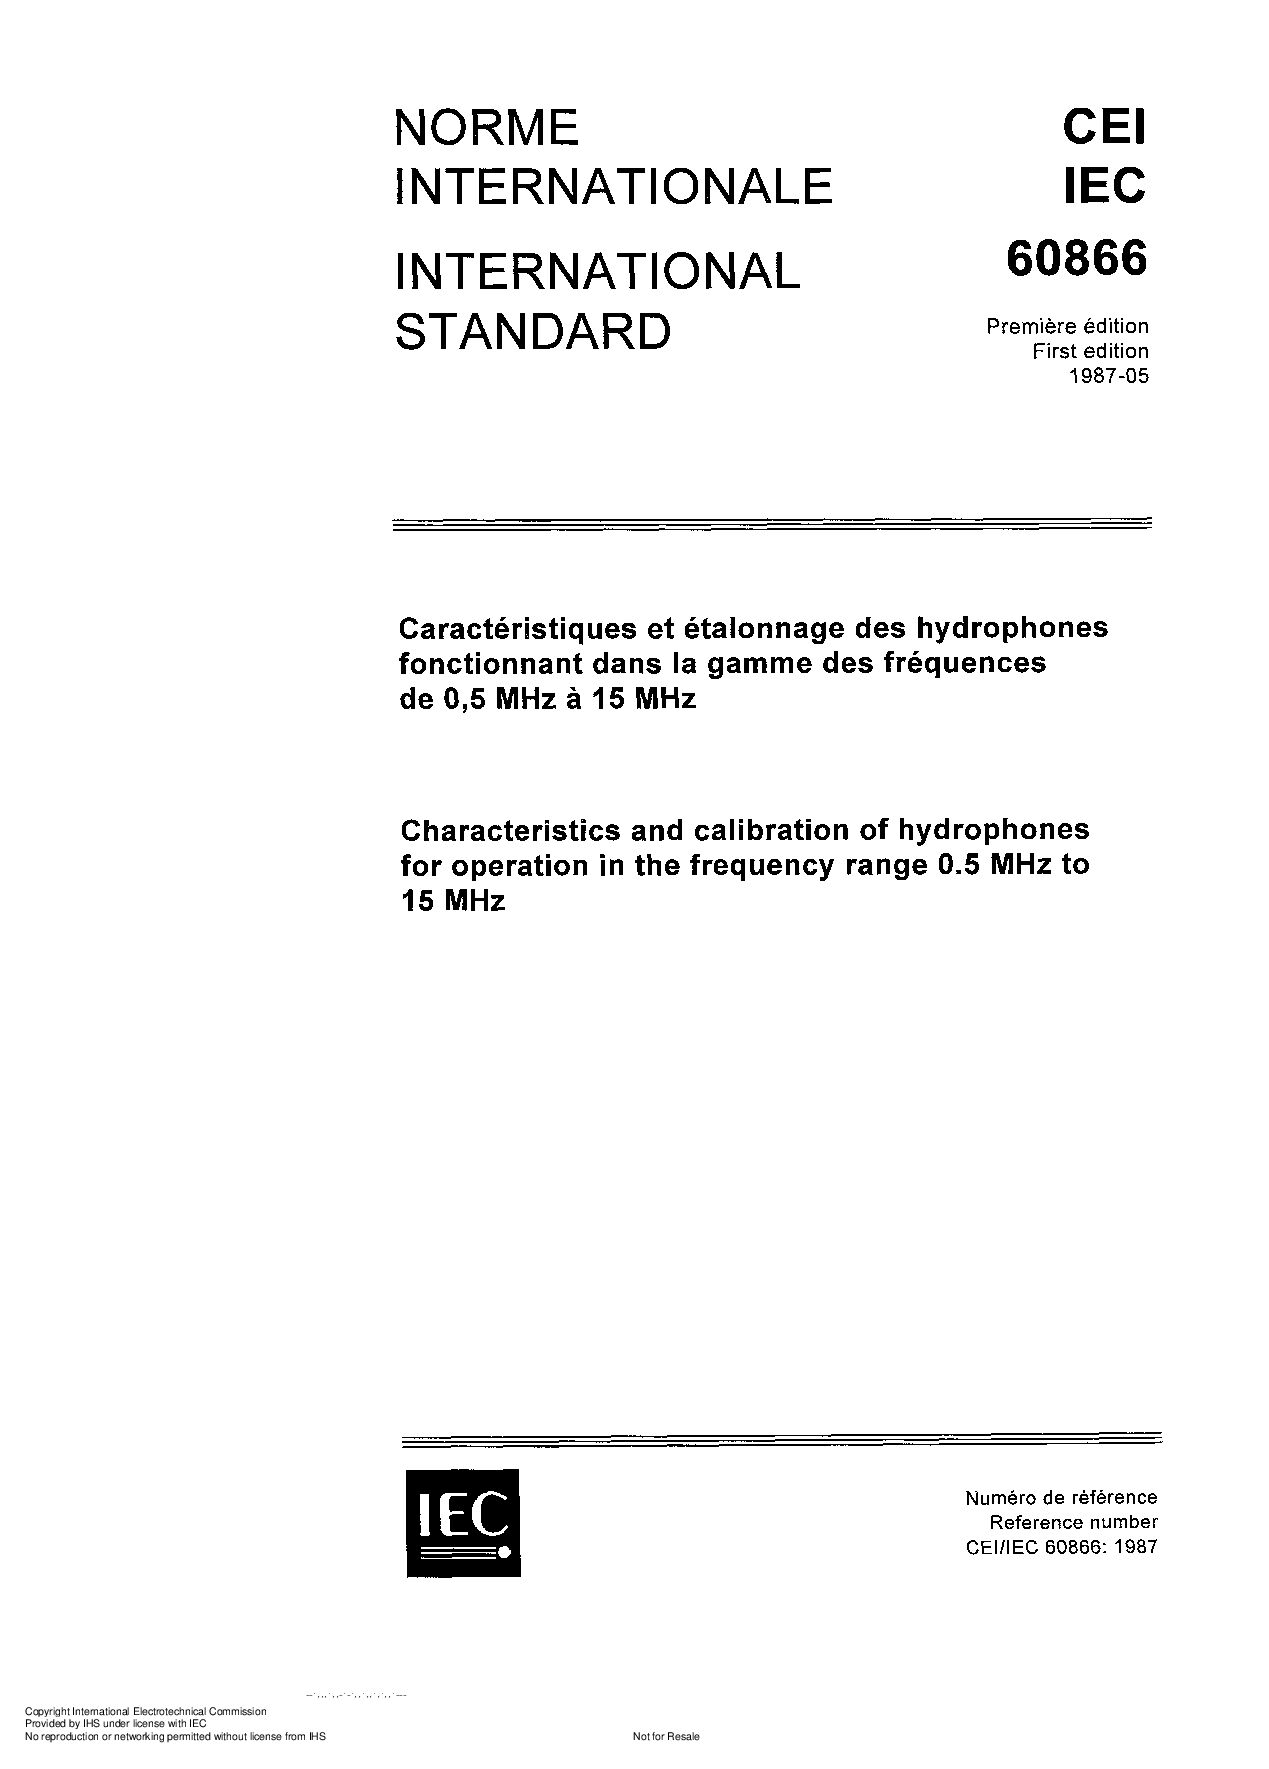 IEC 60866-1987